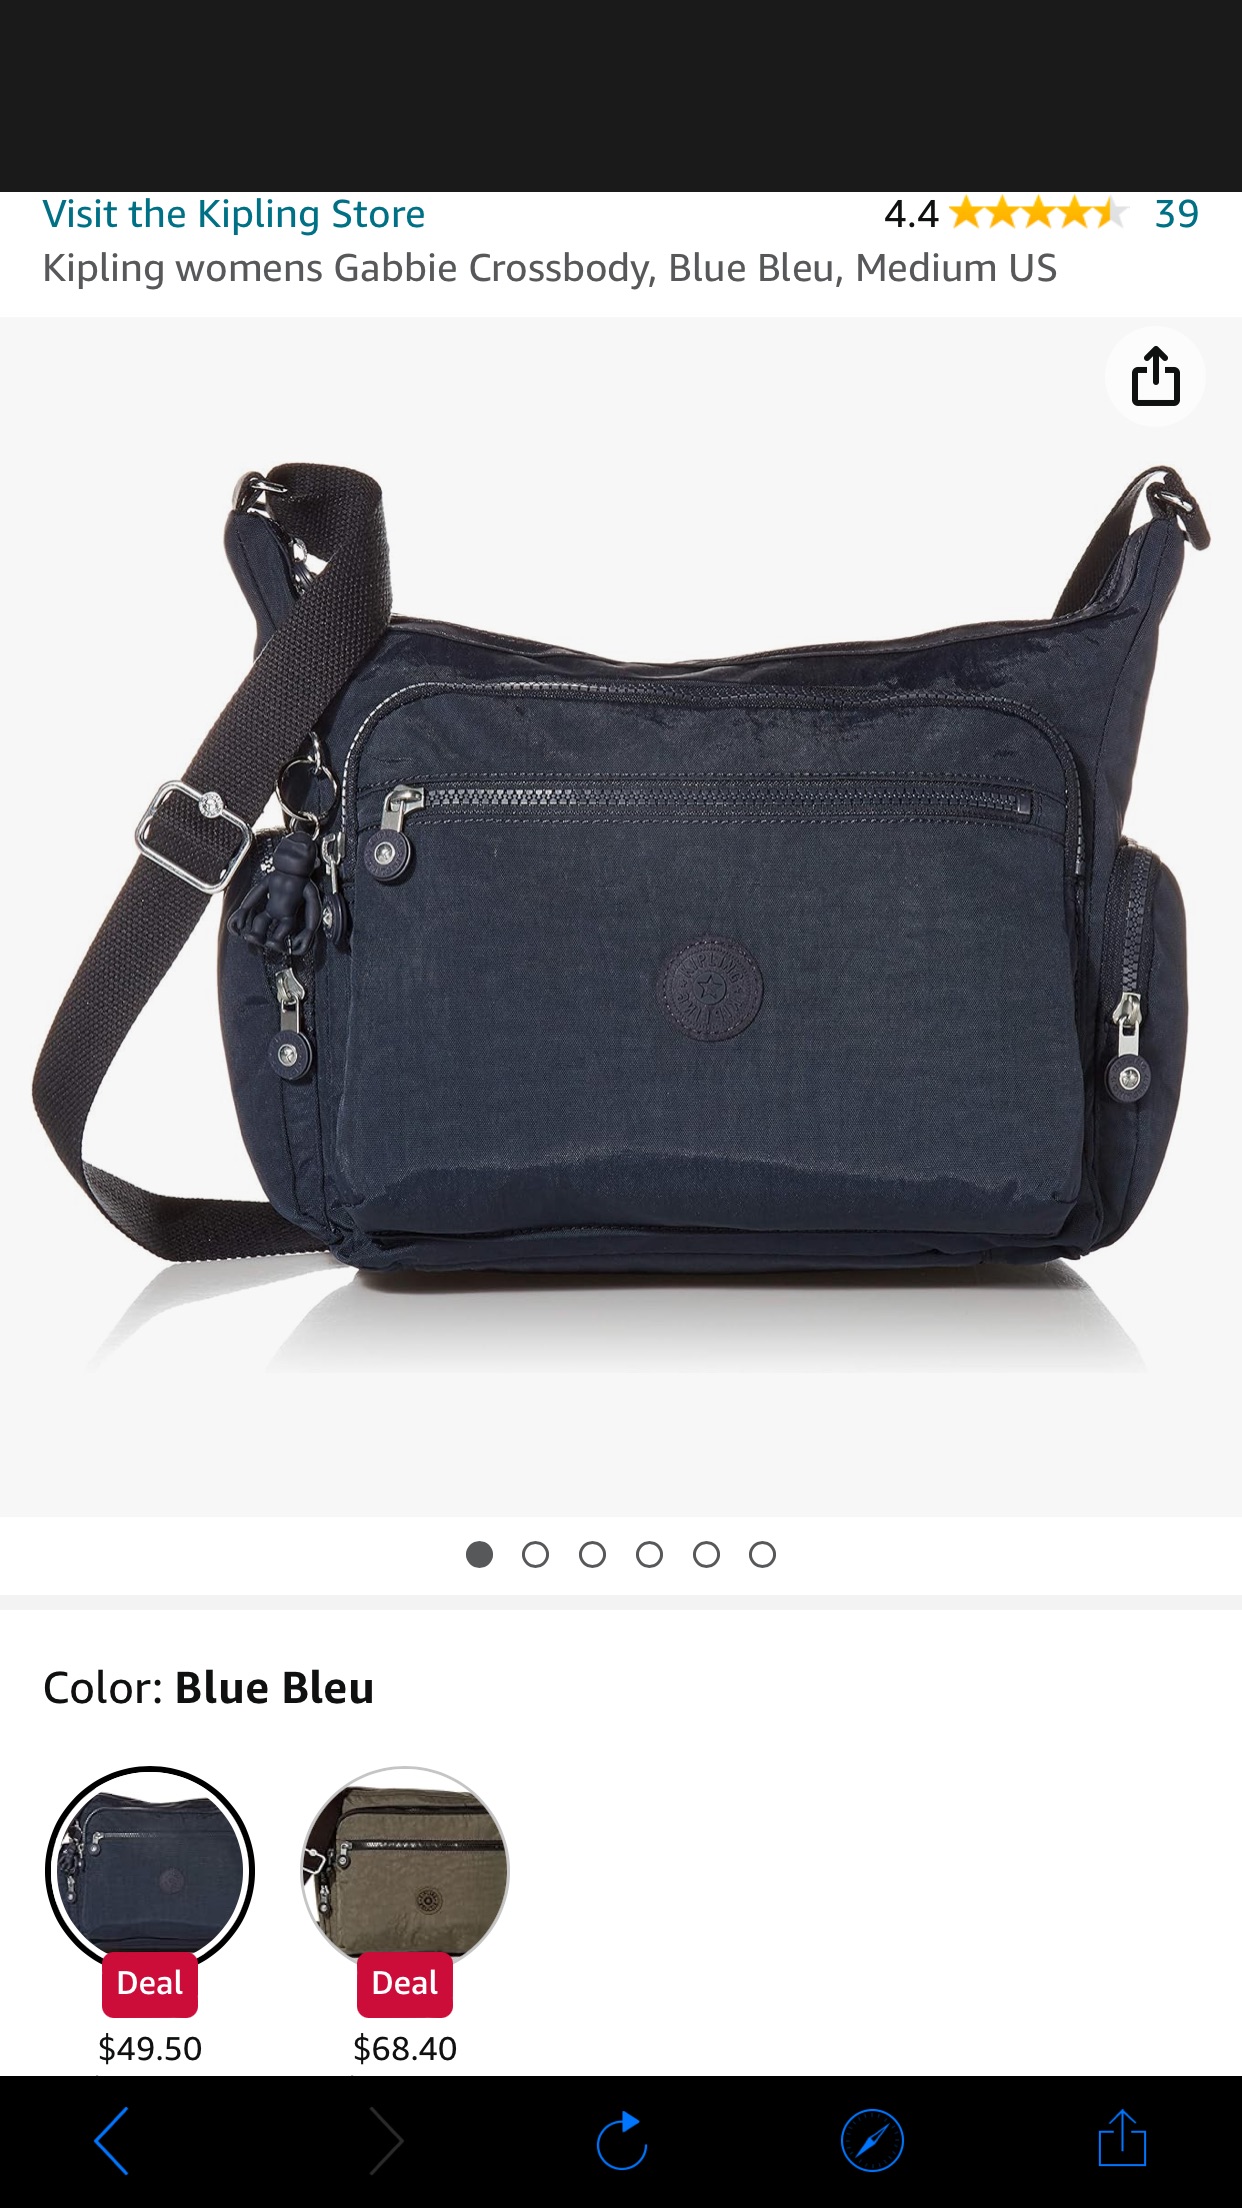 Kipling womens Gabbie crossbody bag, Medium US